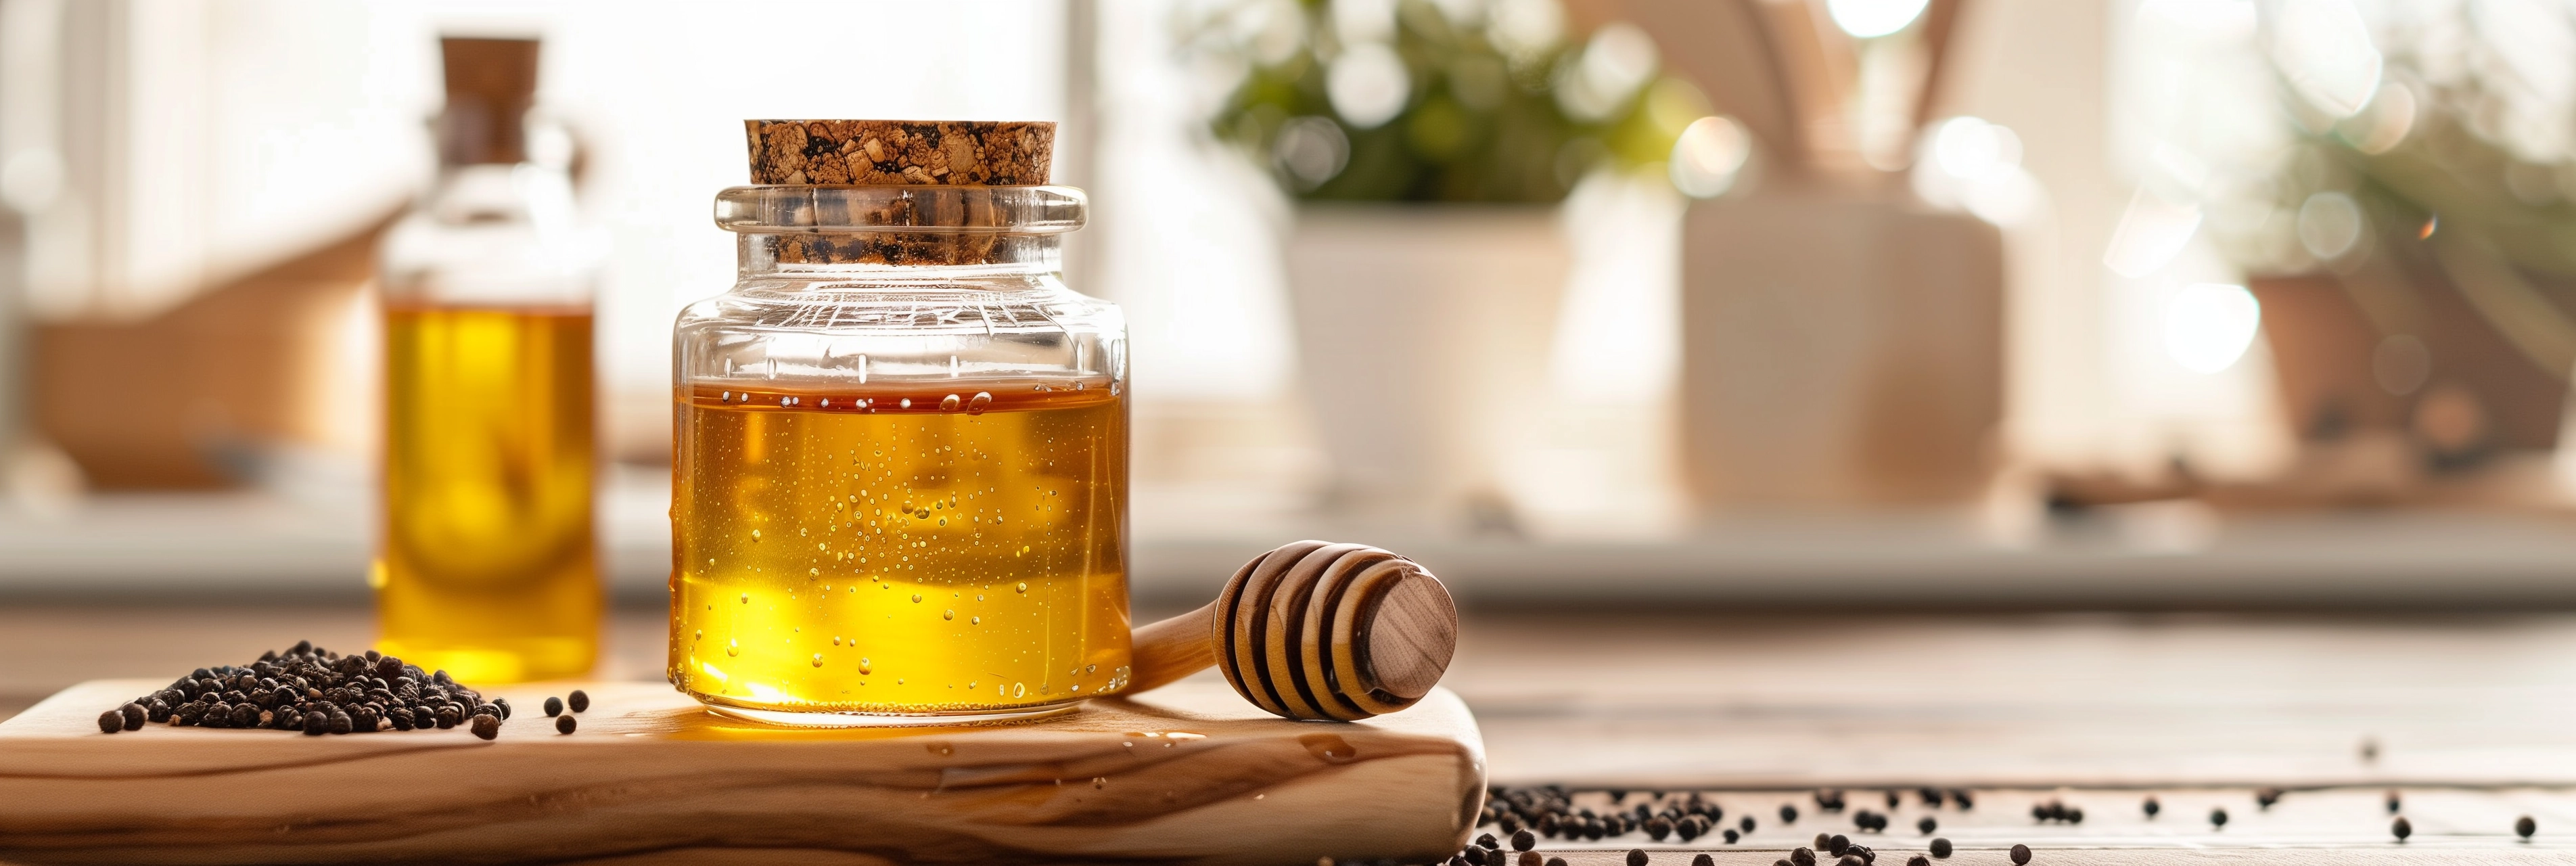 Welchen Honig soll ich mit Schwarzkümmelöl mischen?